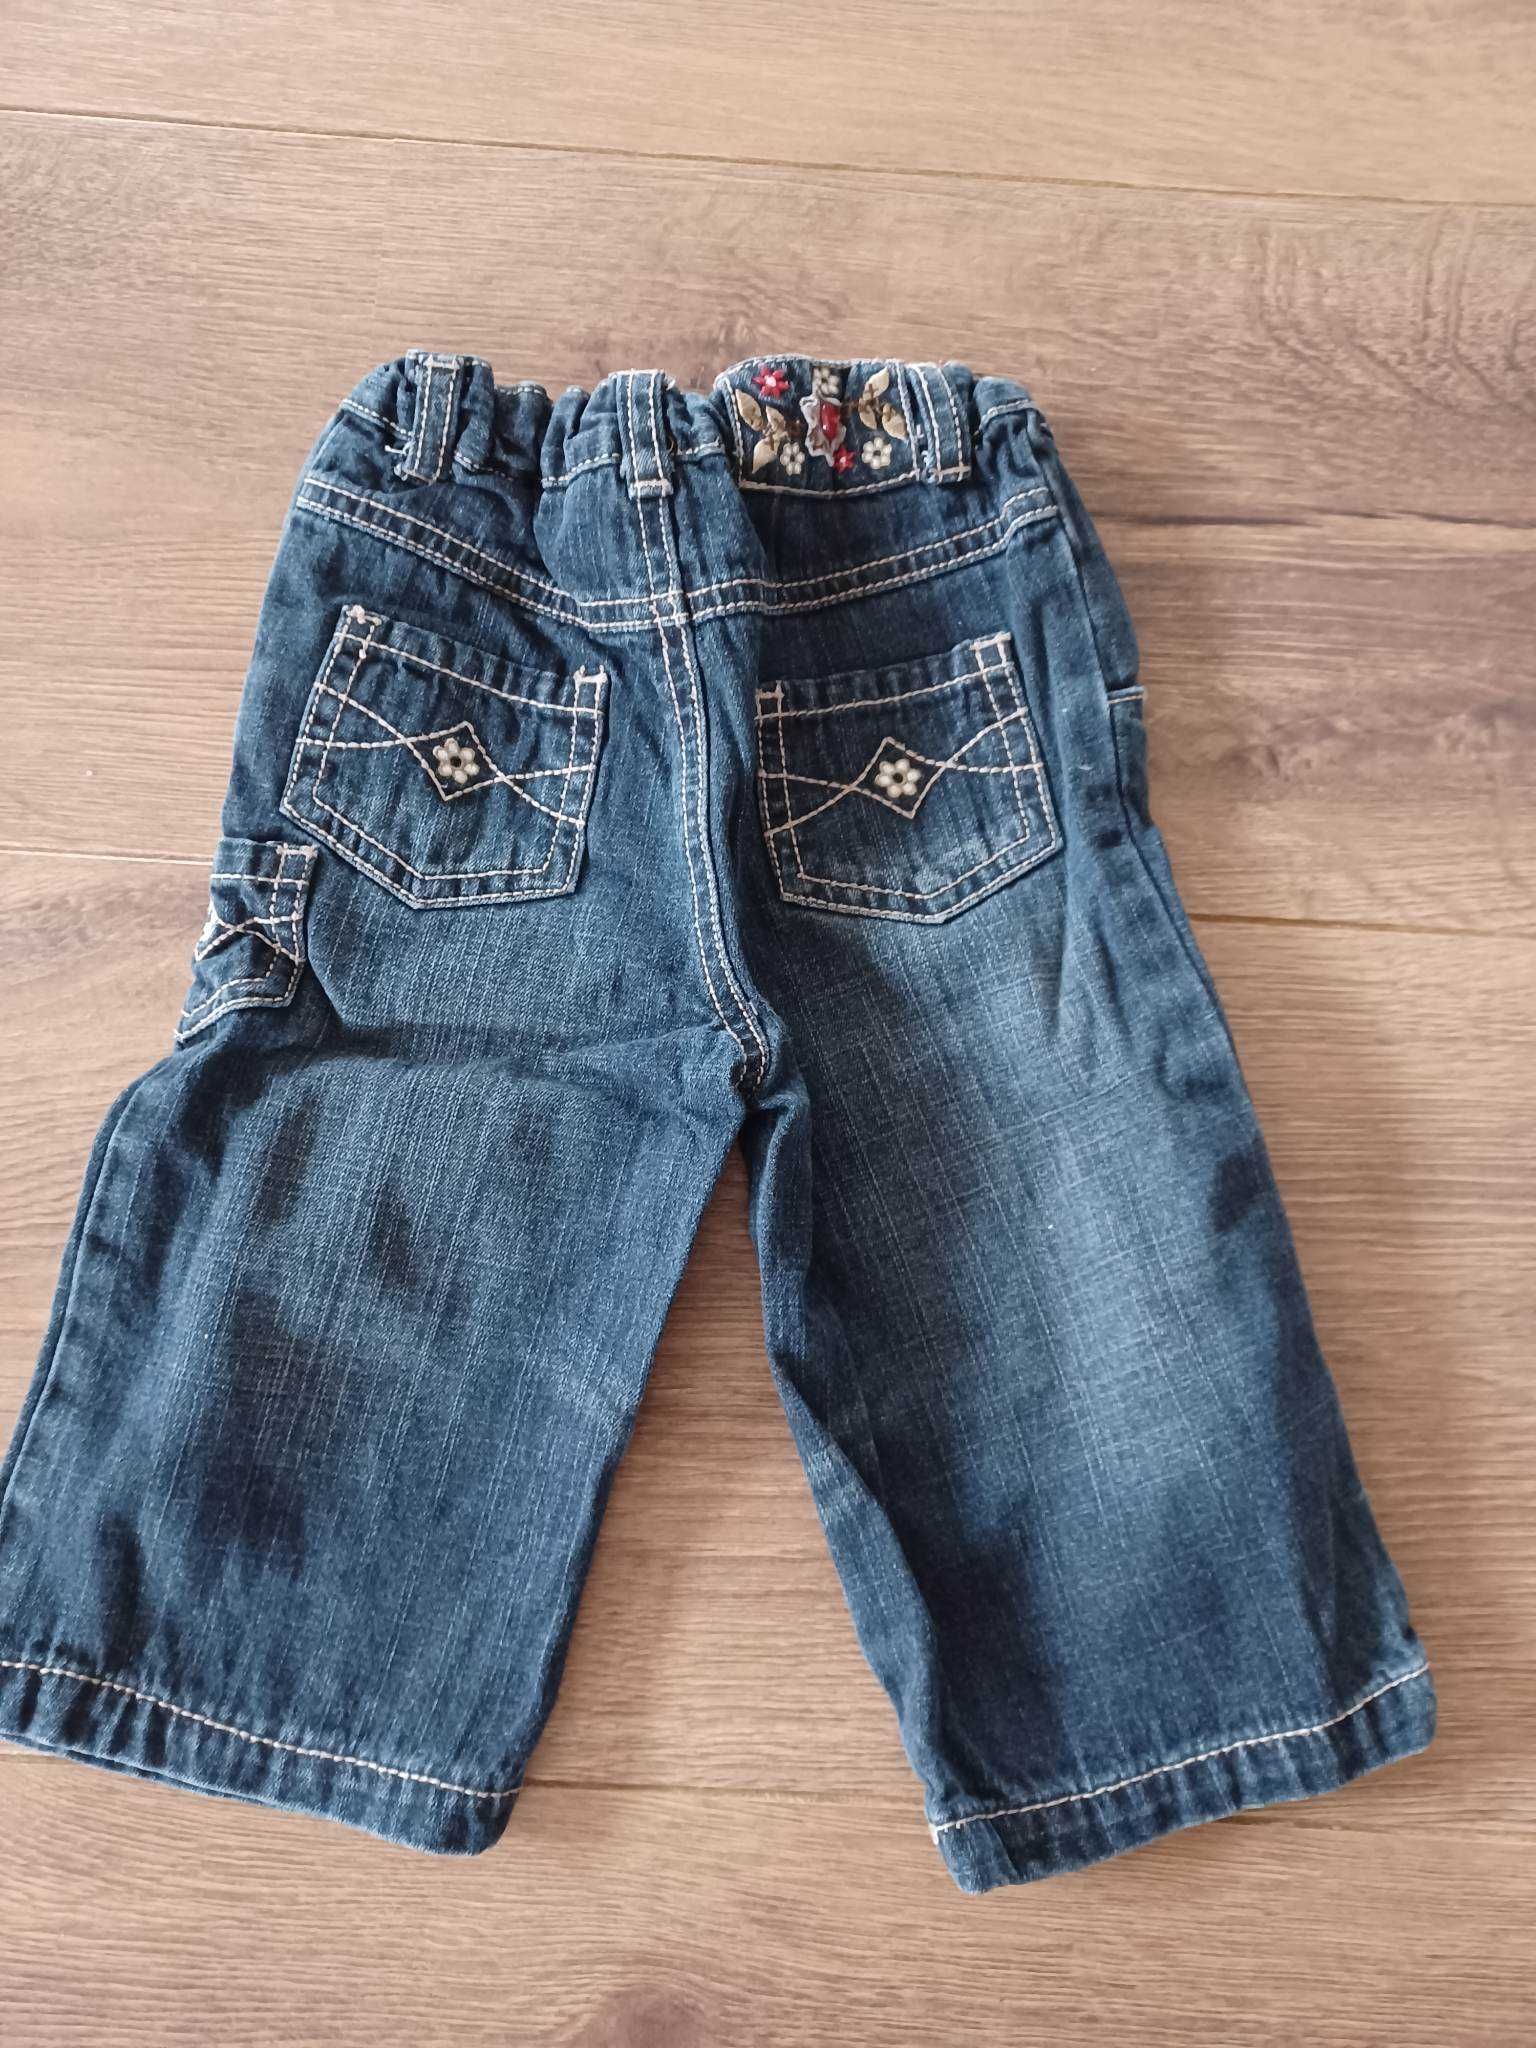 Sprzedam spodnie jeans rozmiar 80, 9-12 msc